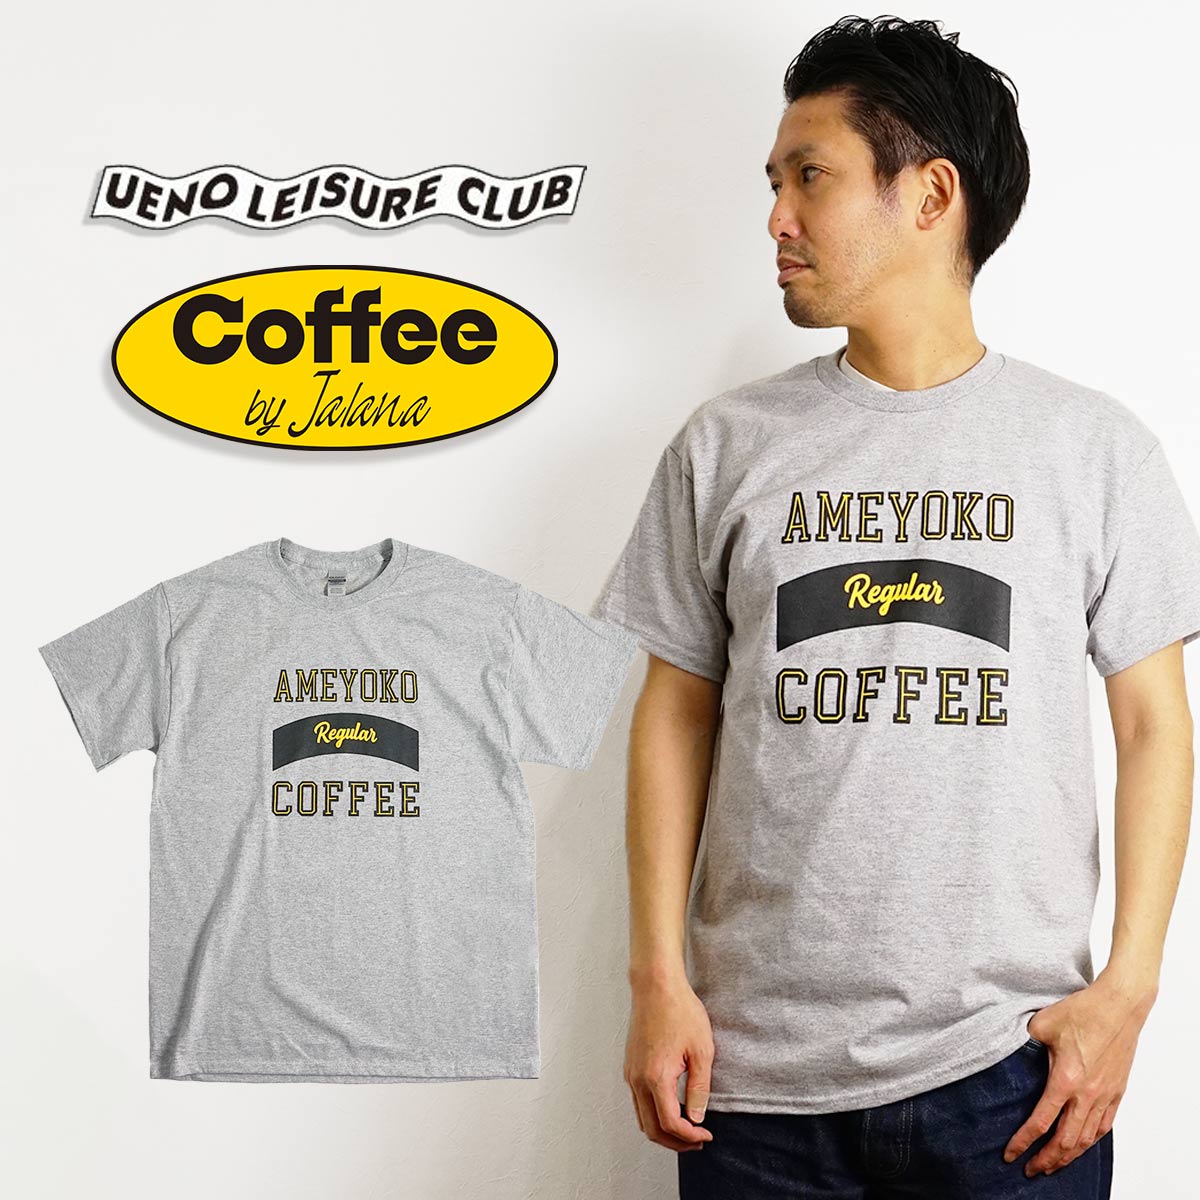 ウエノレジャークラブ UENO LEISURE CLUB Coffee by Jalana AMEYOKO Regular COFFEE 半袖 Tシャツ（メンズ レディース ユニセックス M-XXL ギルダン)